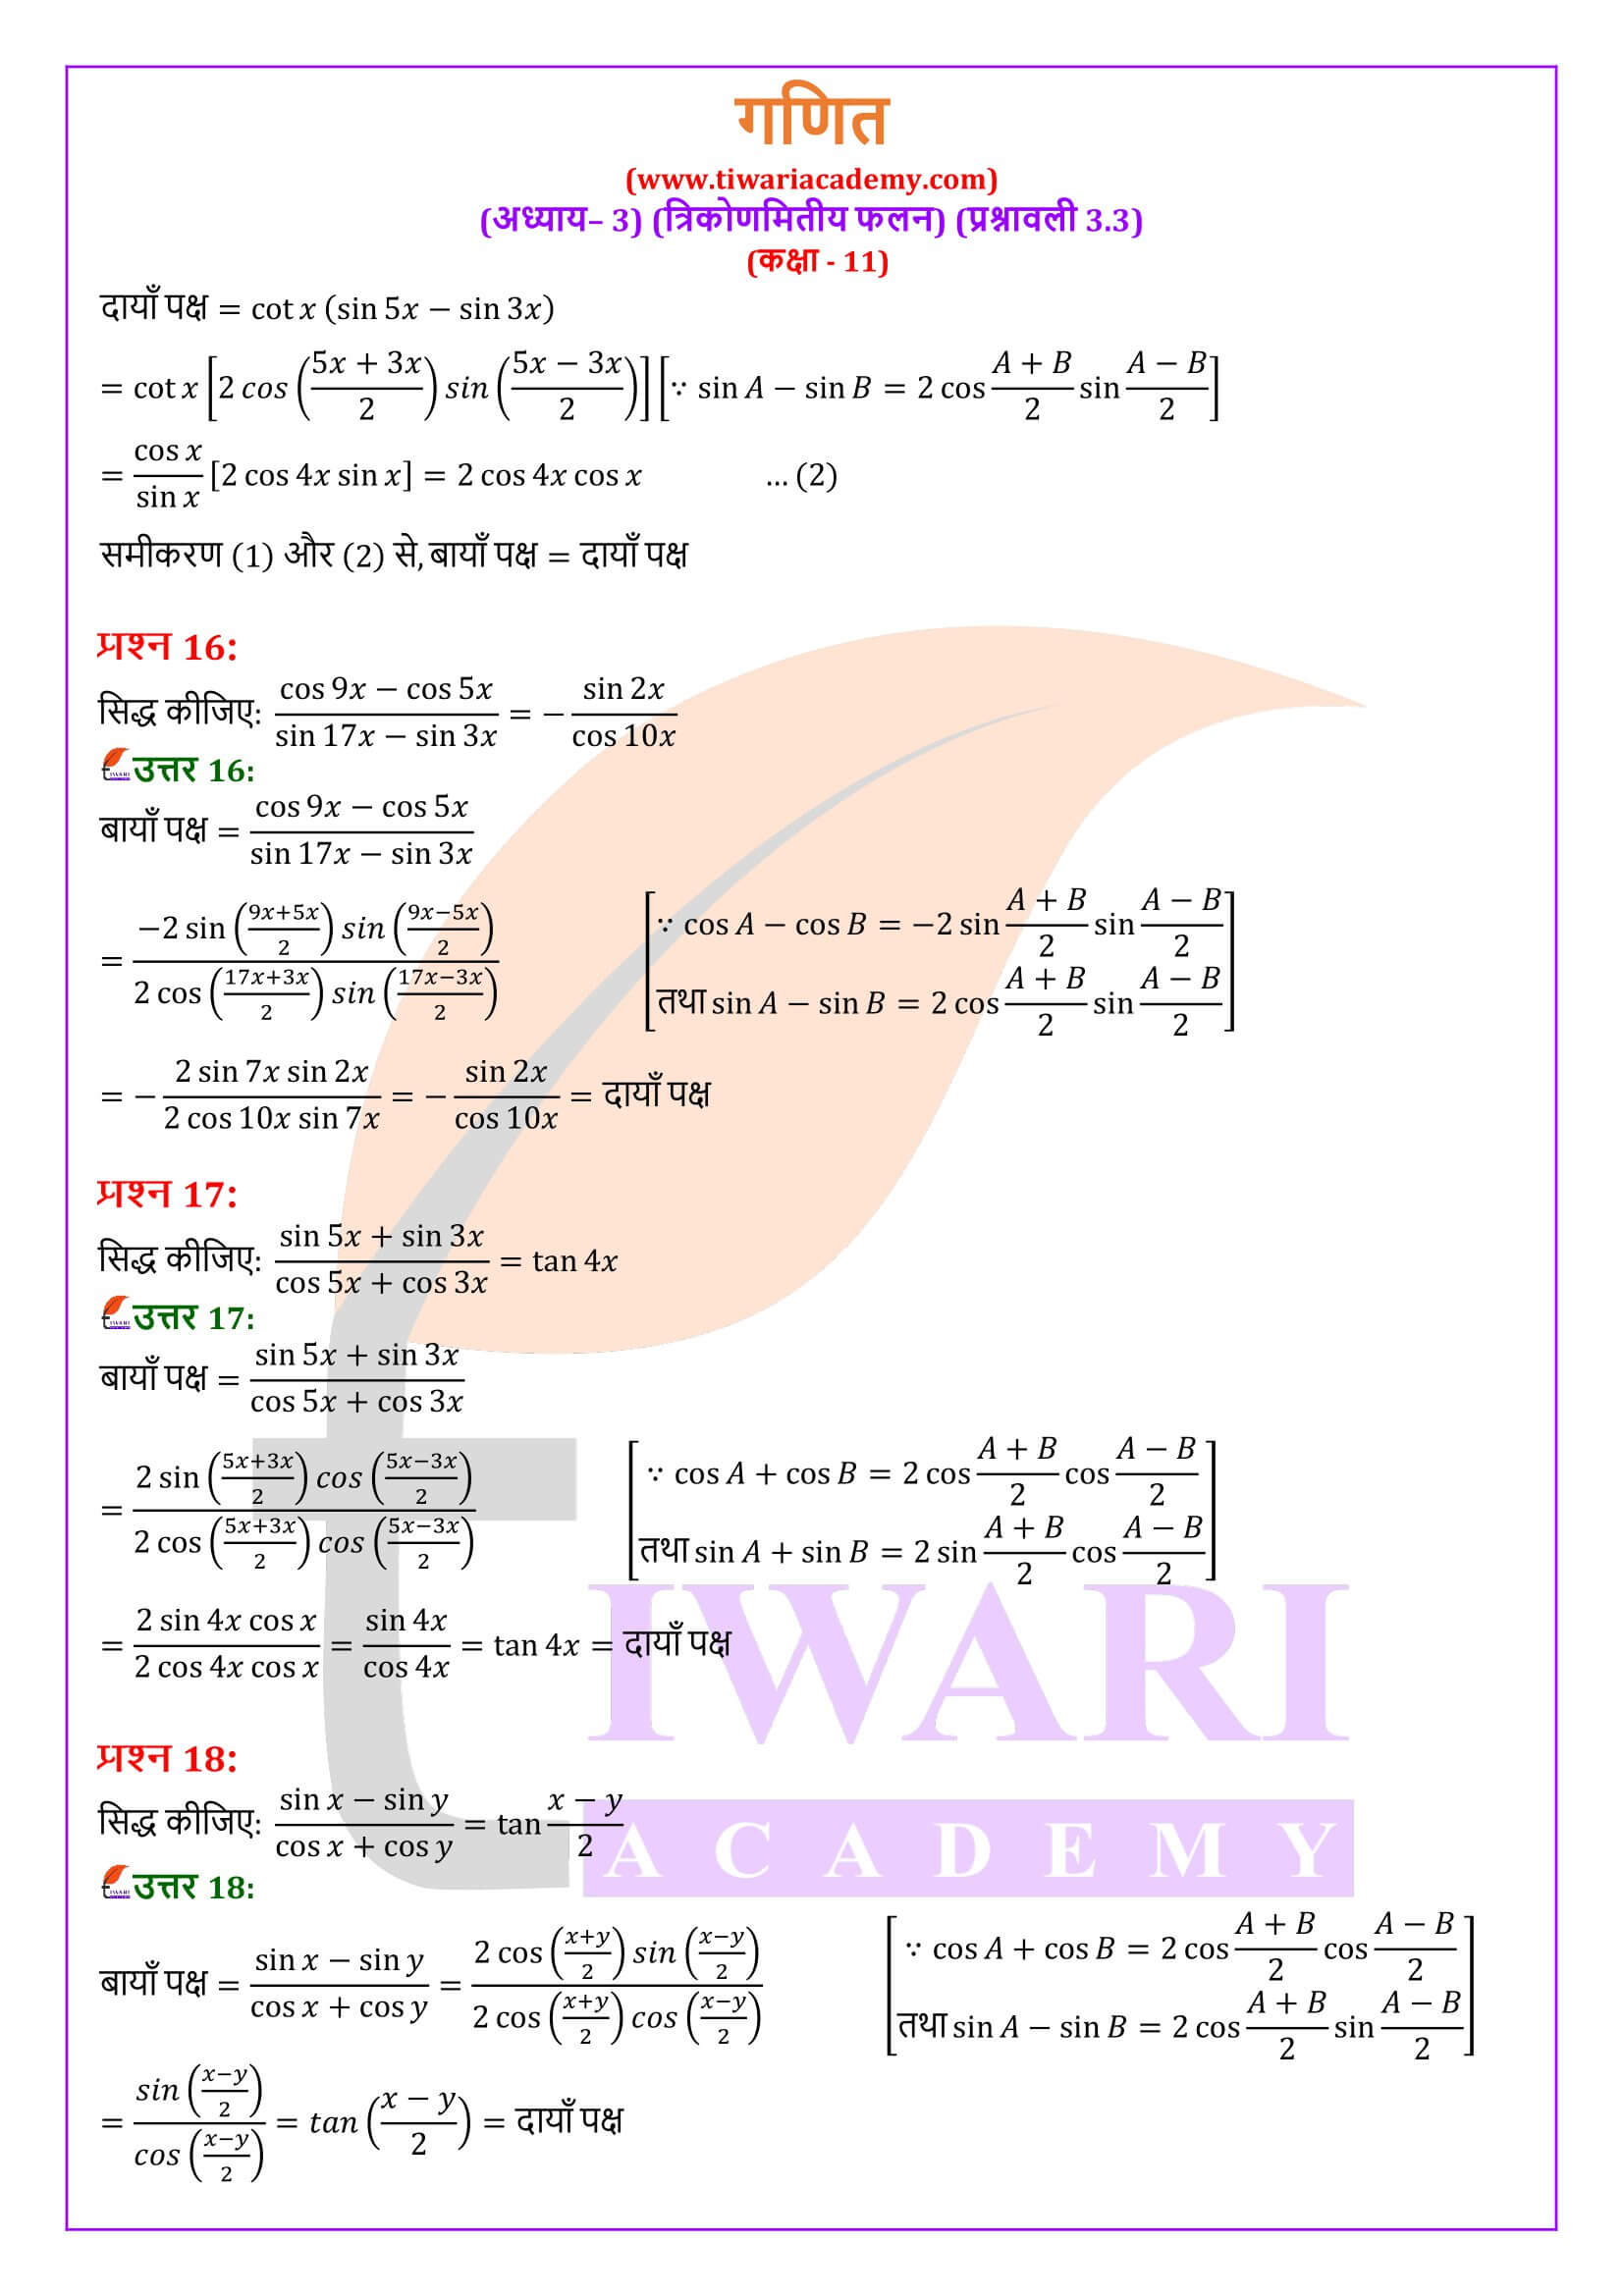 एनसीईआरटी समाधान कक्षा 11 गणित अभ्यास 3.3 के हल हिंदी में